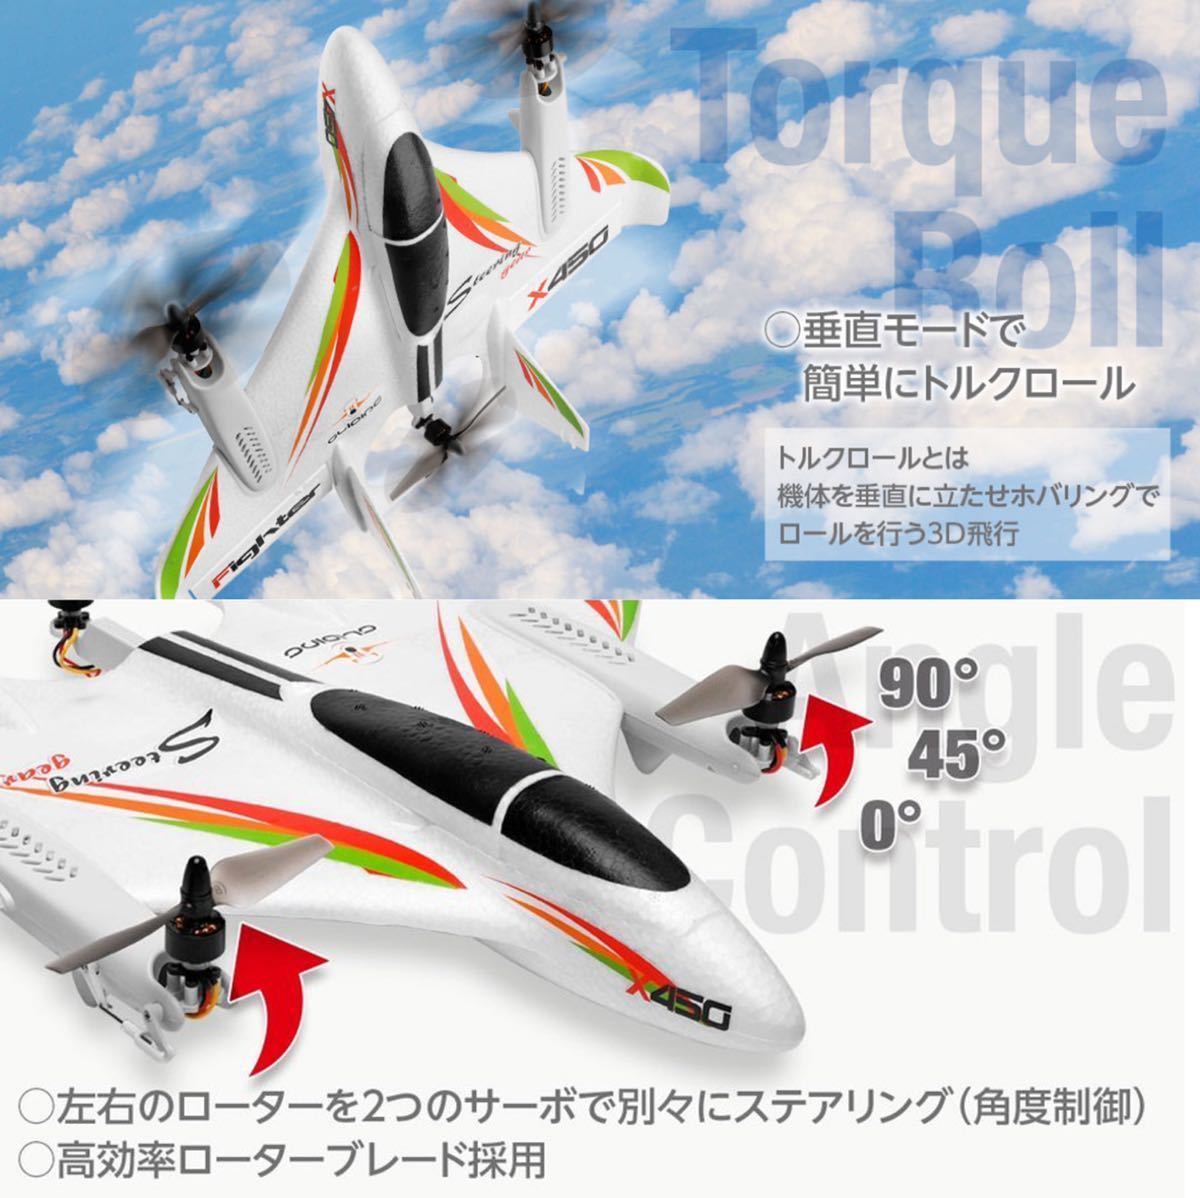 国内即納 XK X450 3D/6G ラジコン プレーン rc飛行機 VTOL ブラシレスモーター 固定翼垂直 ドローン 2.4G 6CH モード2送信機 日本語即飛行